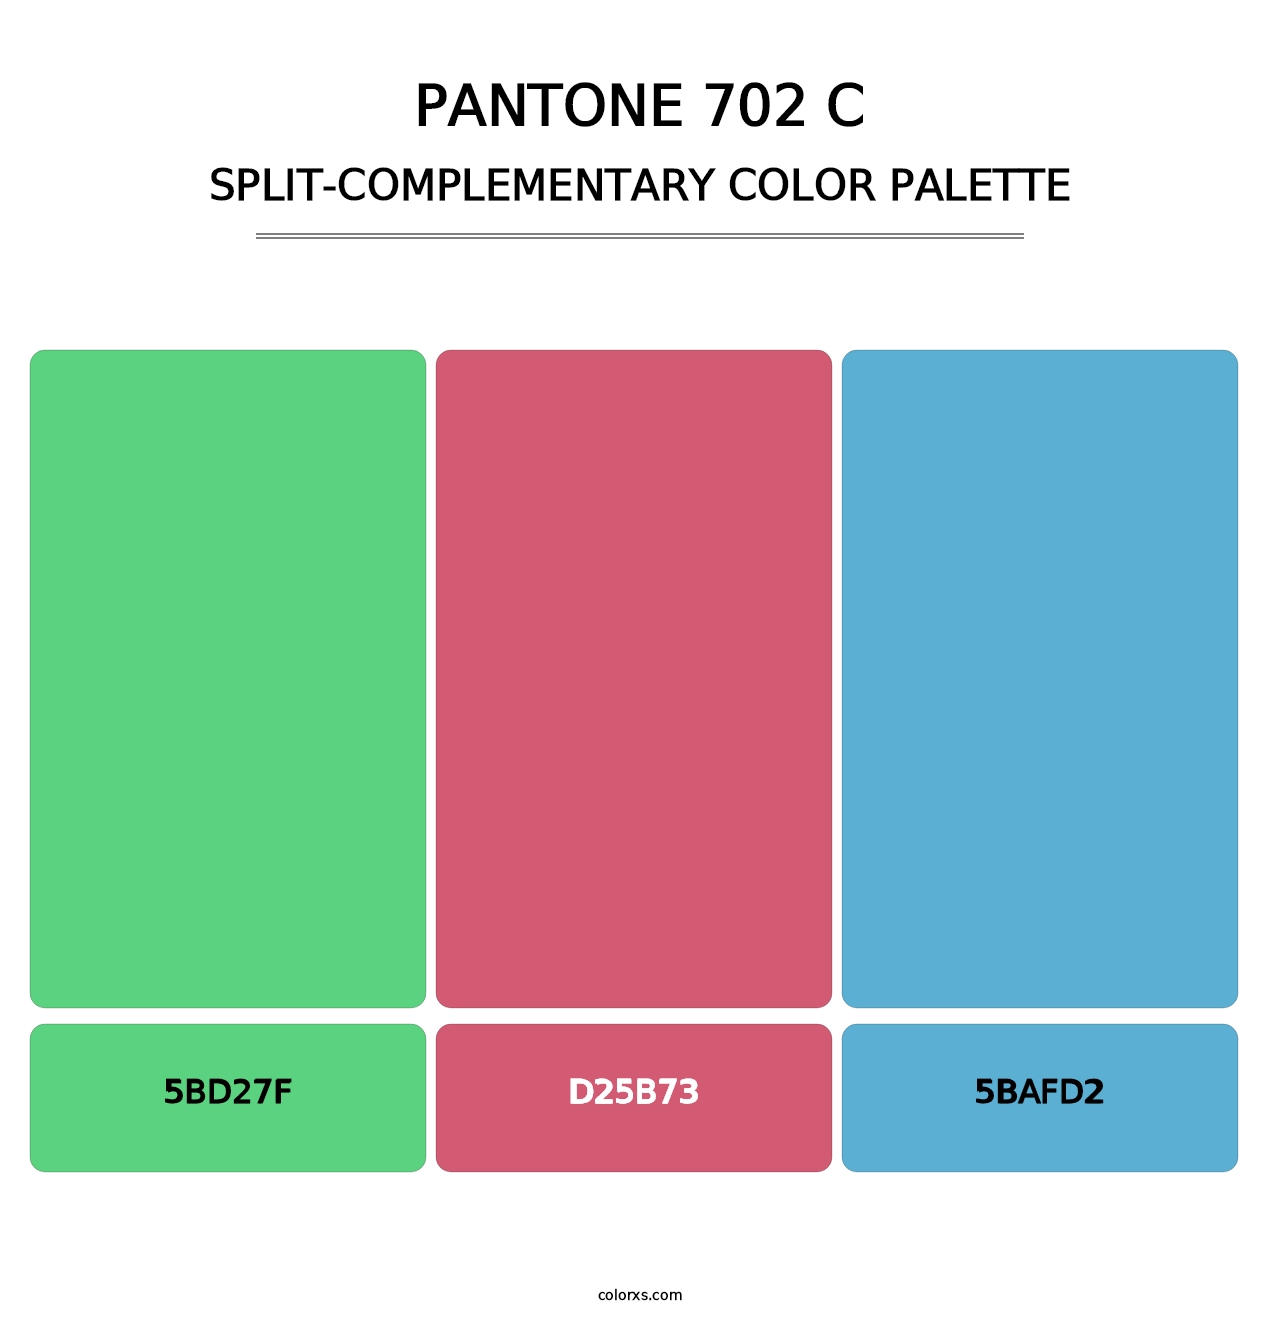 PANTONE 702 C - Split-Complementary Color Palette